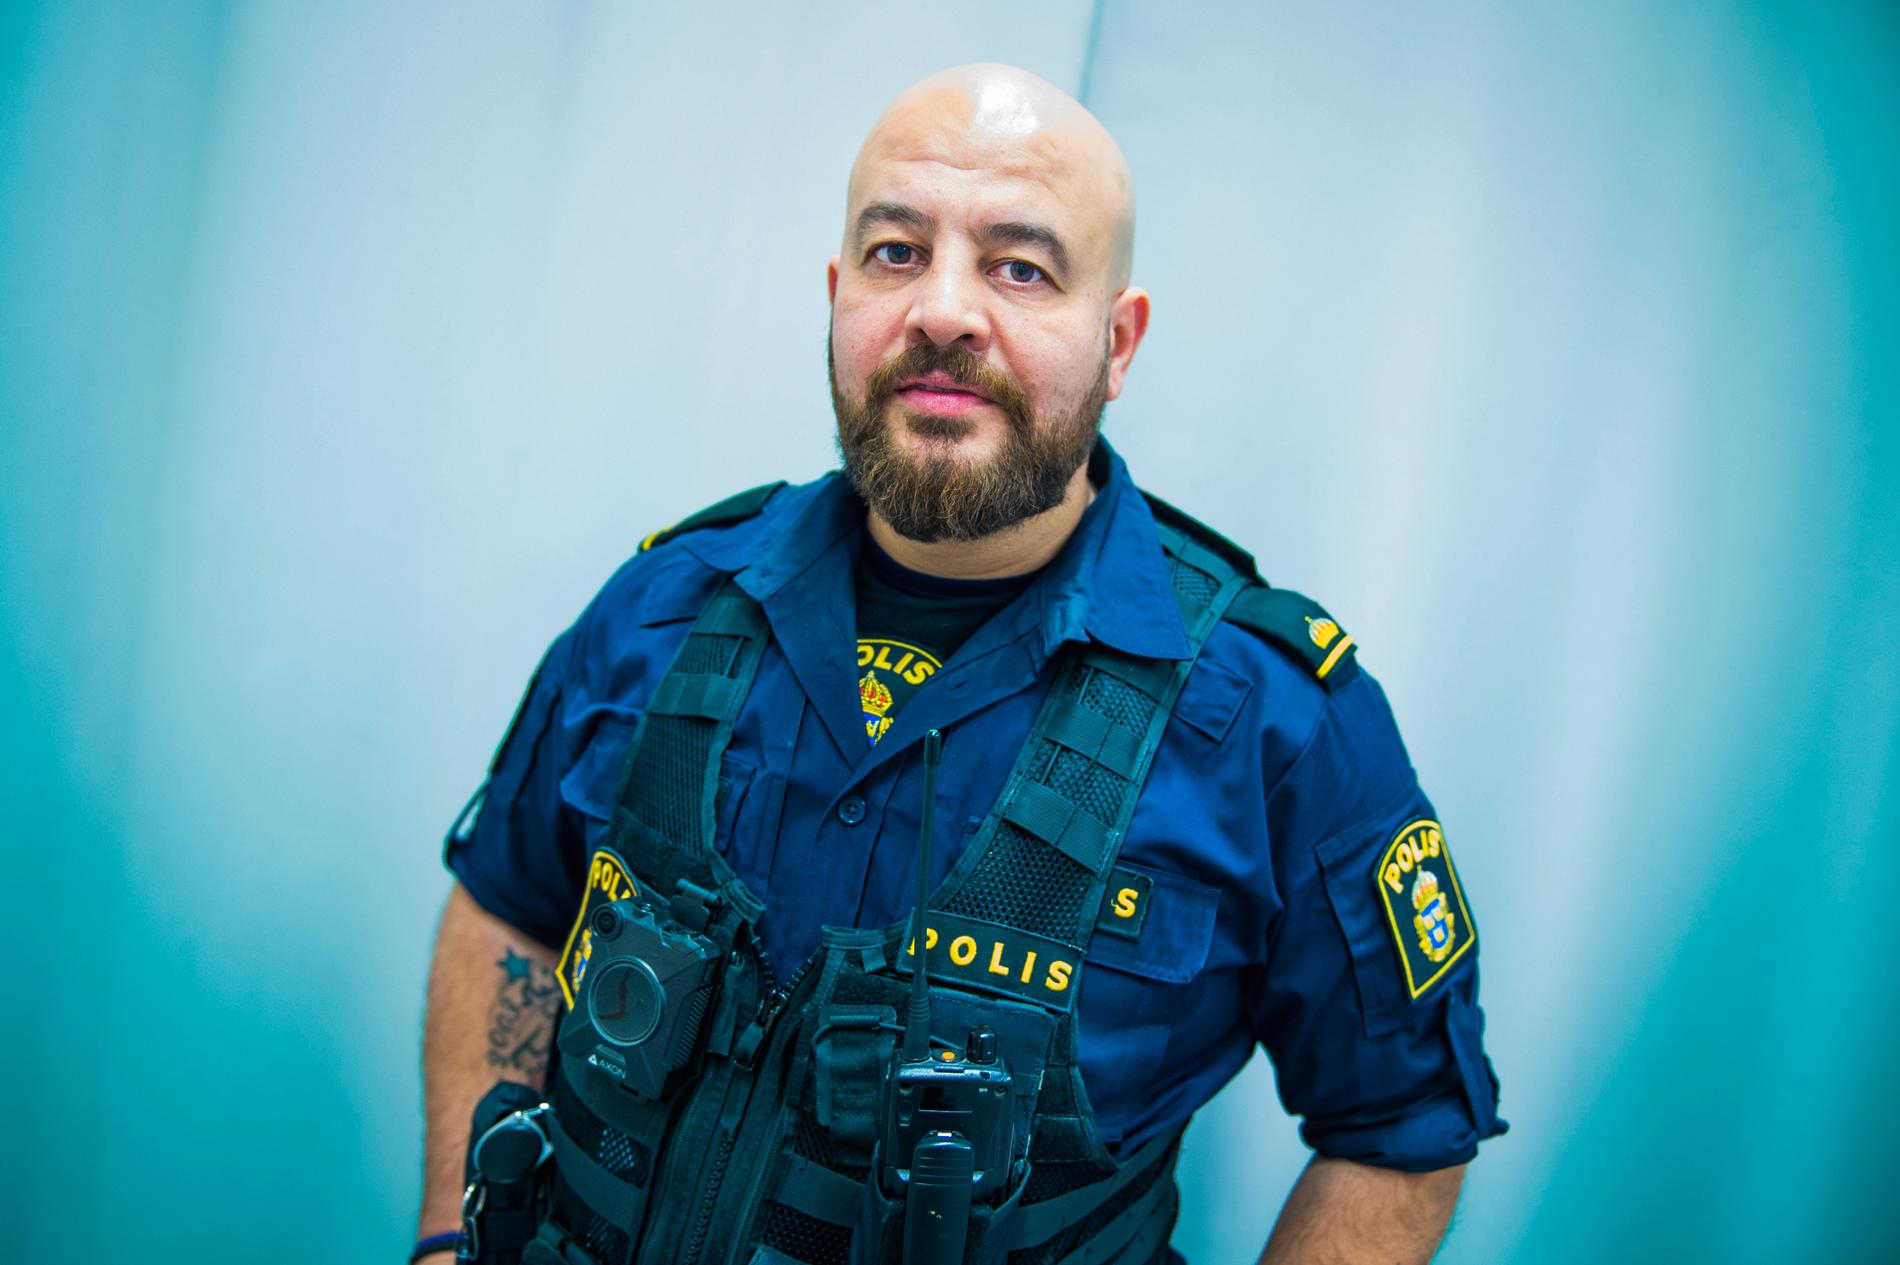 Martin Lazar, polis i Botkyrka, kom till Sverige från Irak som 15-åring. Han säger att han ofta får användning för sina kunskaper i assyriska och arabiska.